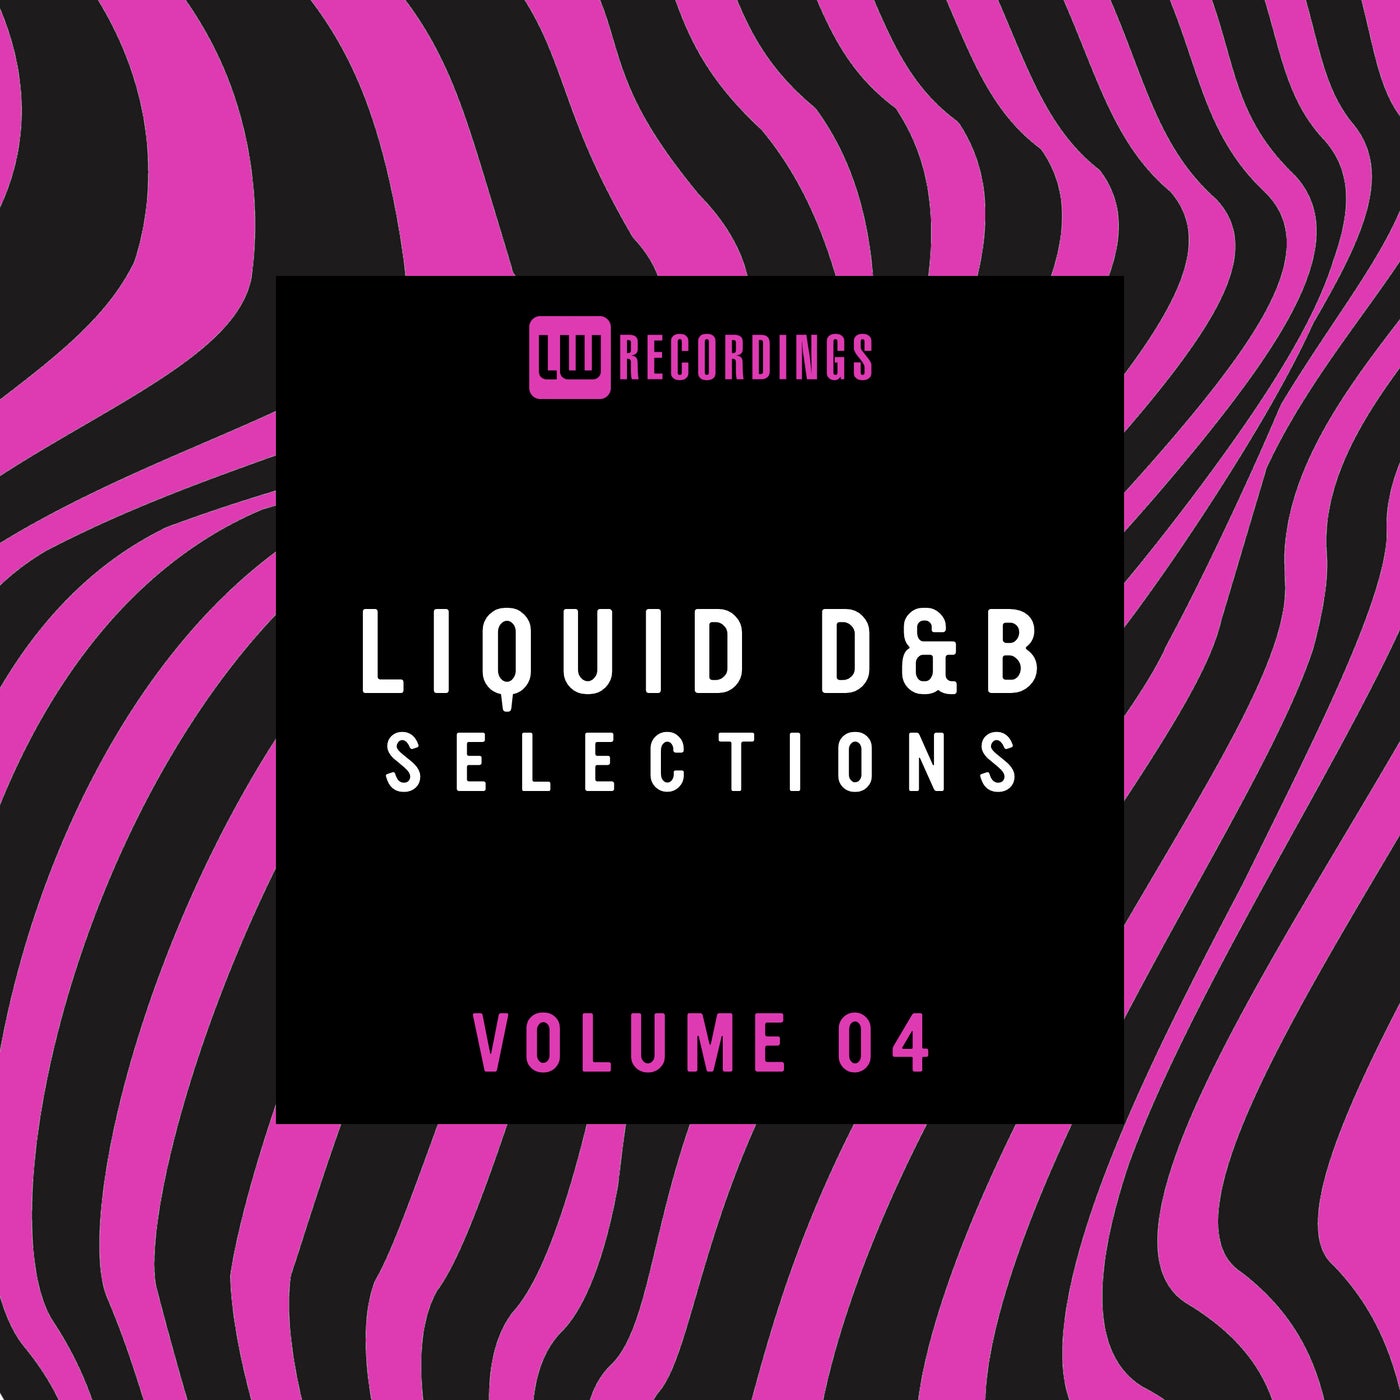 Liquid Drum & Bass Selections, Vol. 04